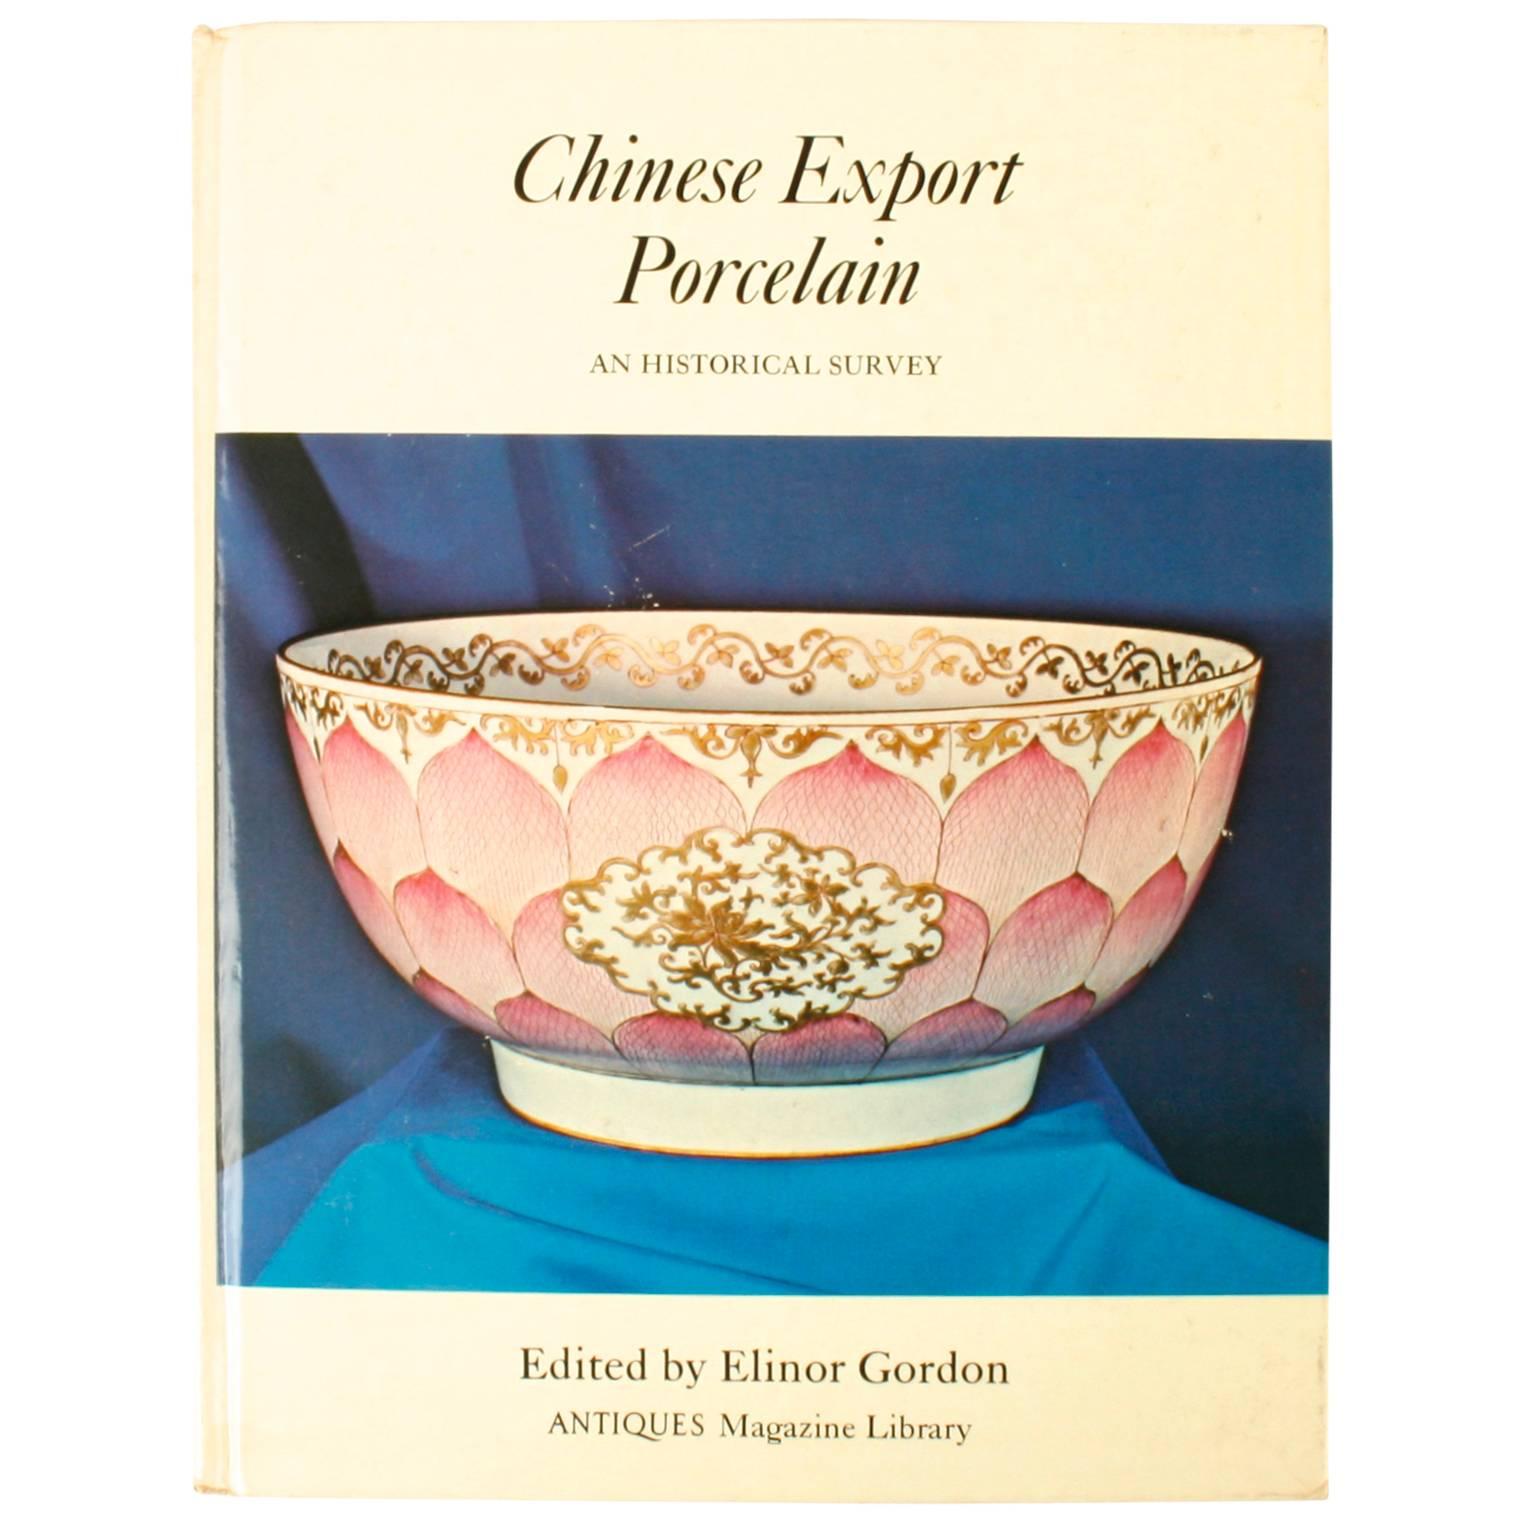 Porcelaine d'exportation chinoise : une étude historique par Elinor Gordon, première édition